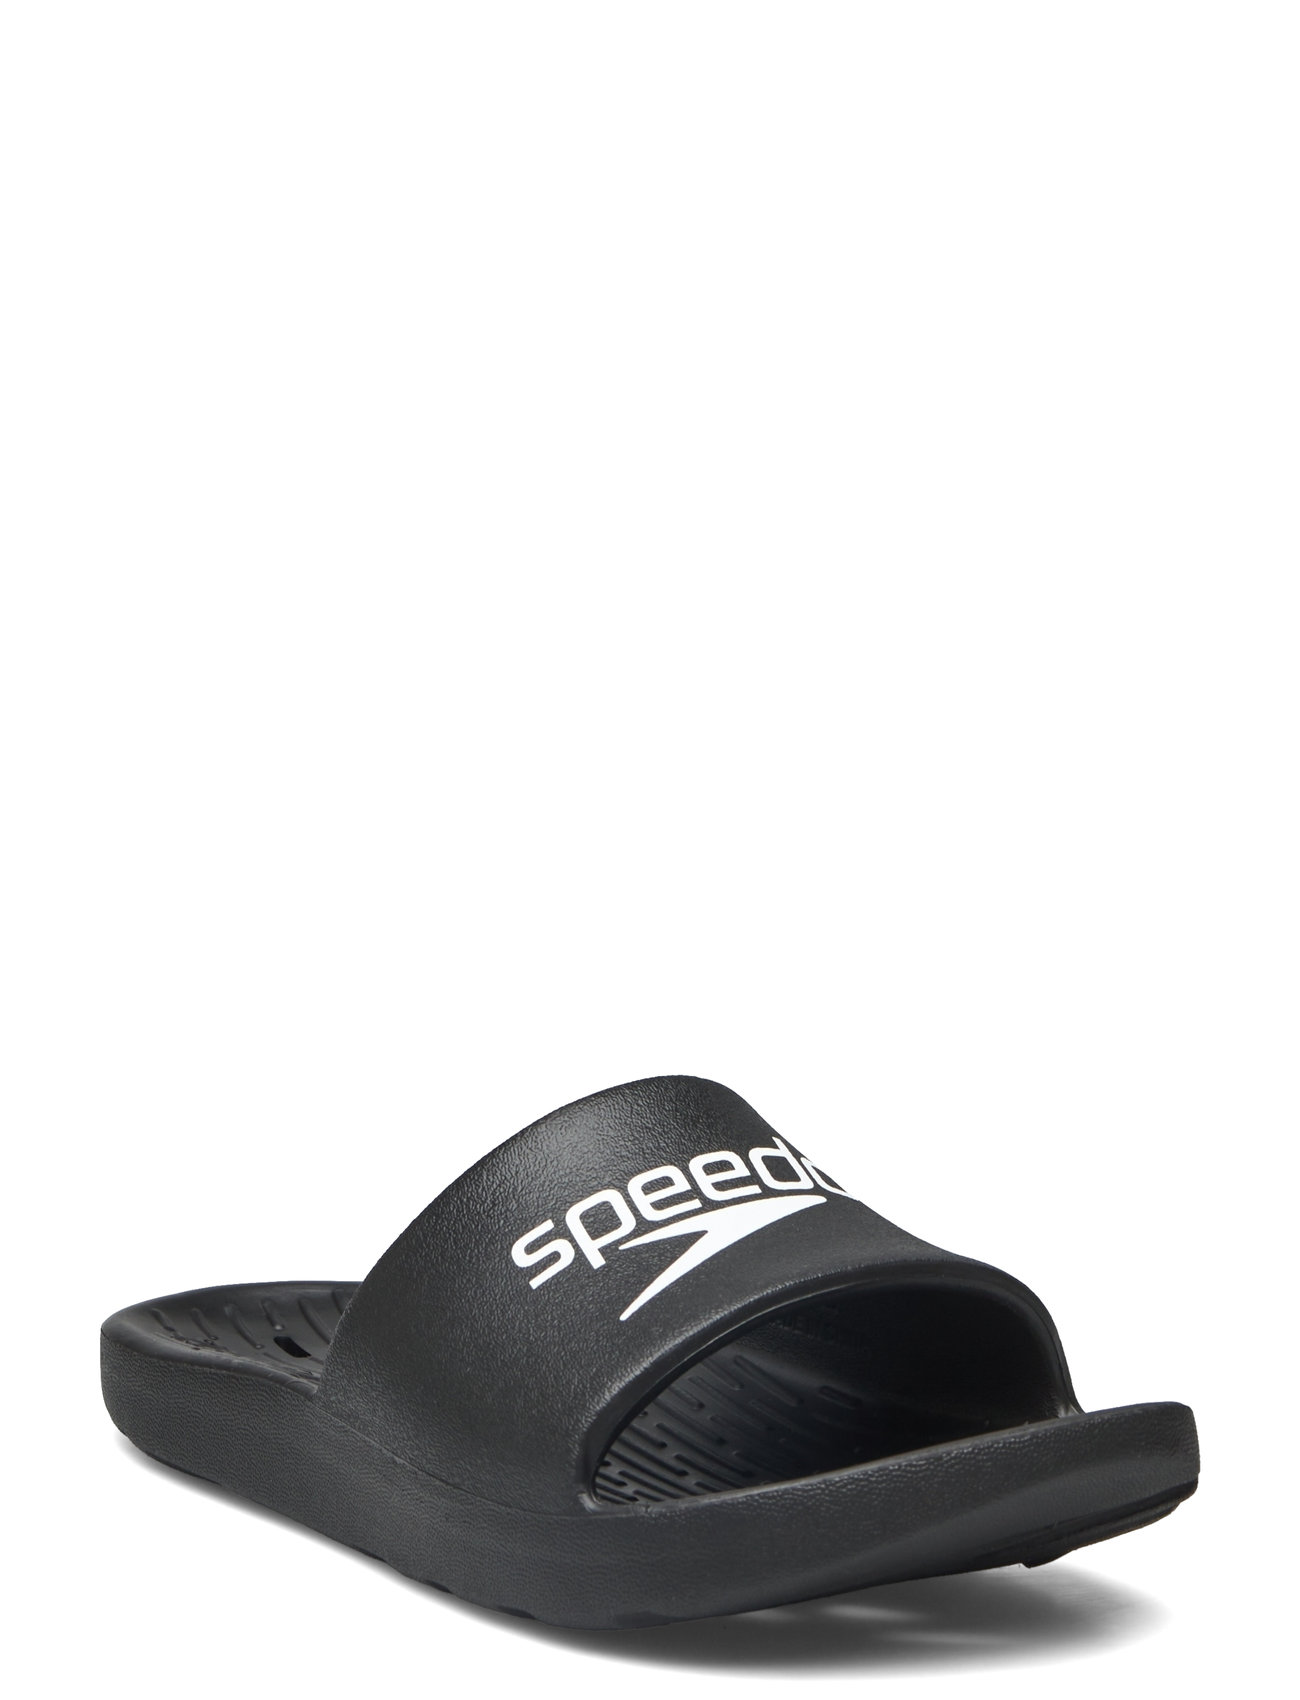 Speedo Slide Af Sport Summer Shoes Sandals Pool Sliders Black Speedo